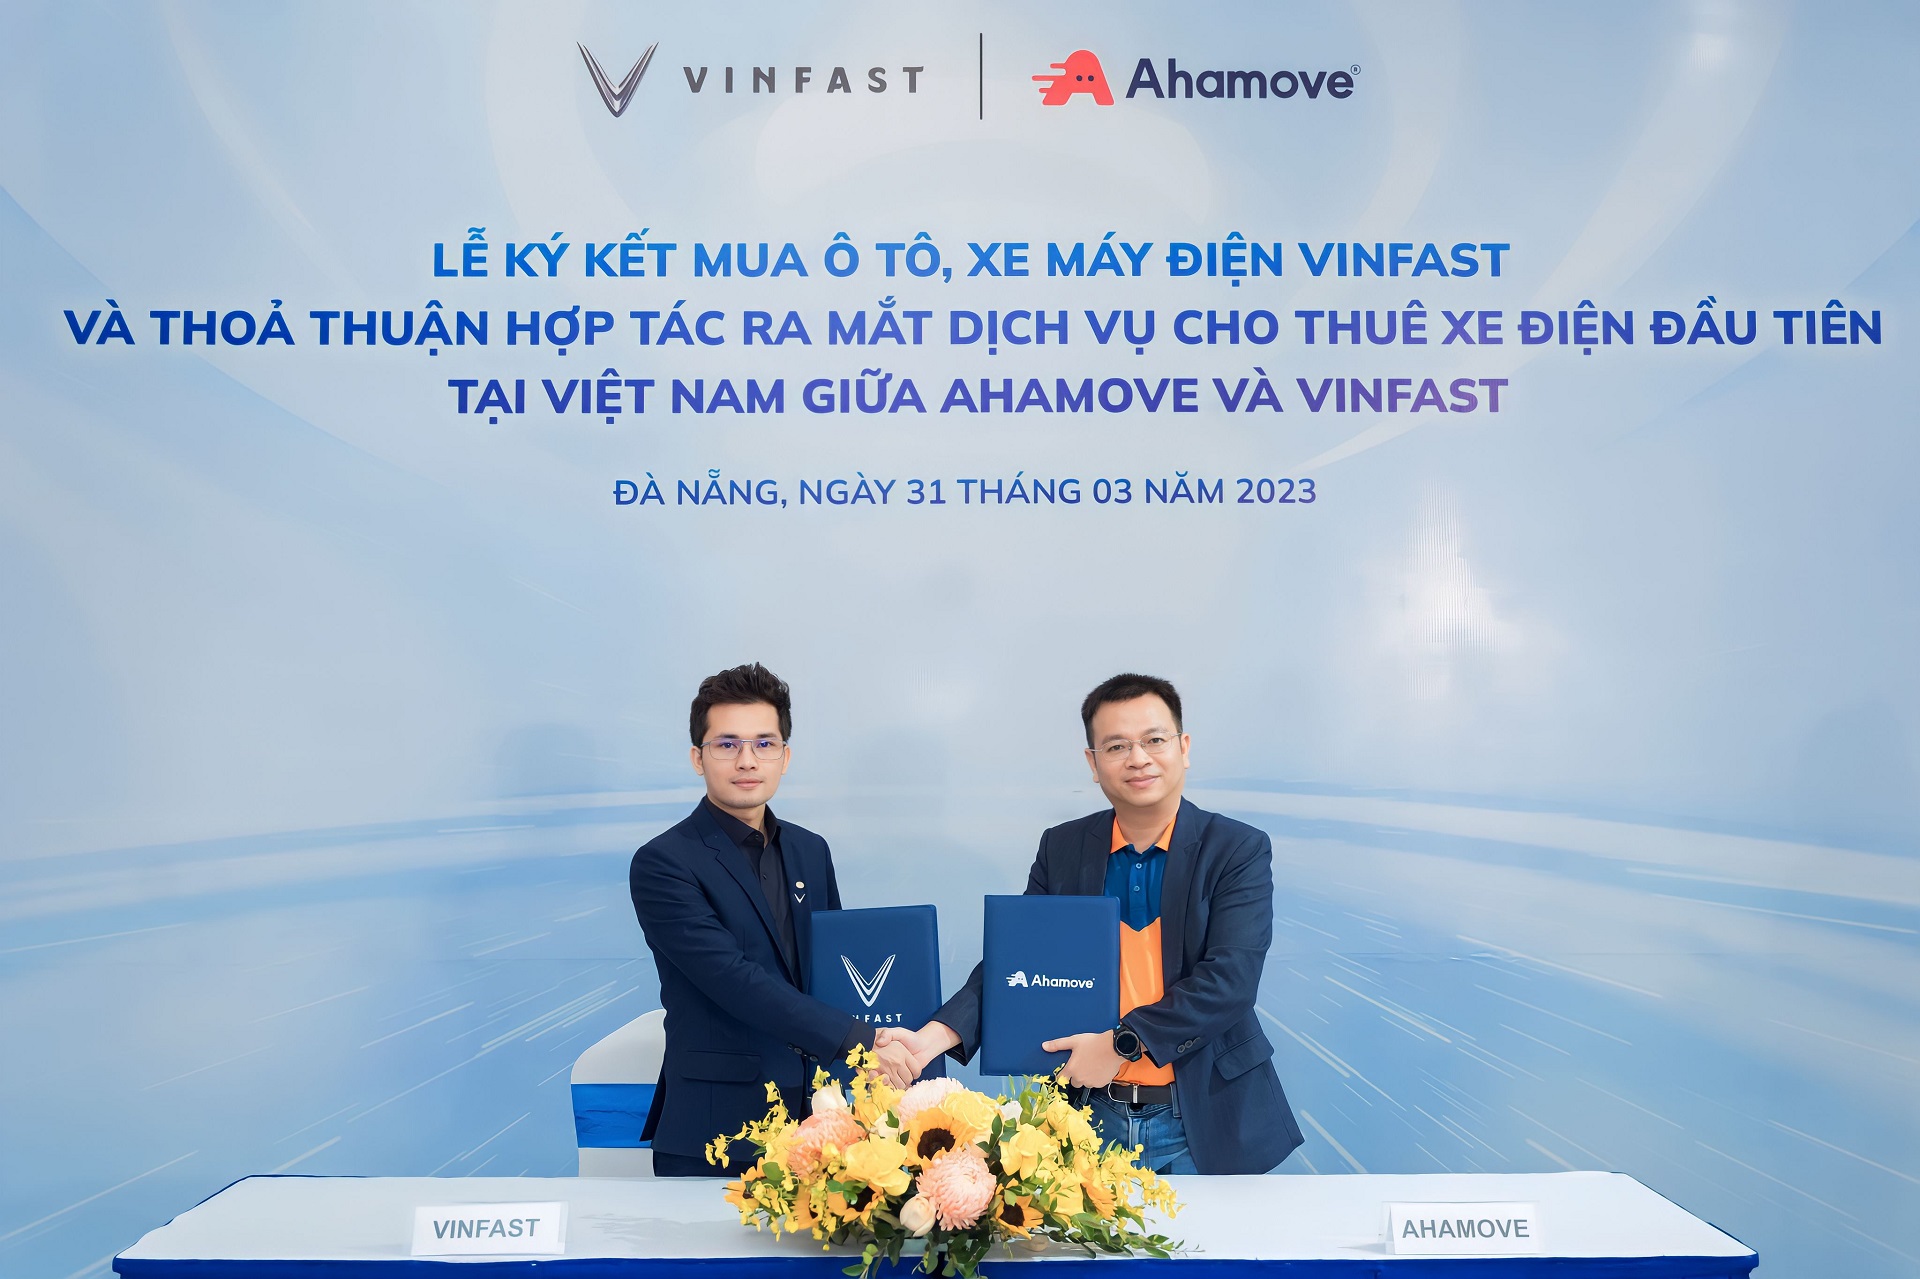 Ahamove mua 200 xe VinFast để triển khai dịch vụ cho thuê xe máy điện đầu tiên tại Việt Nam - 1